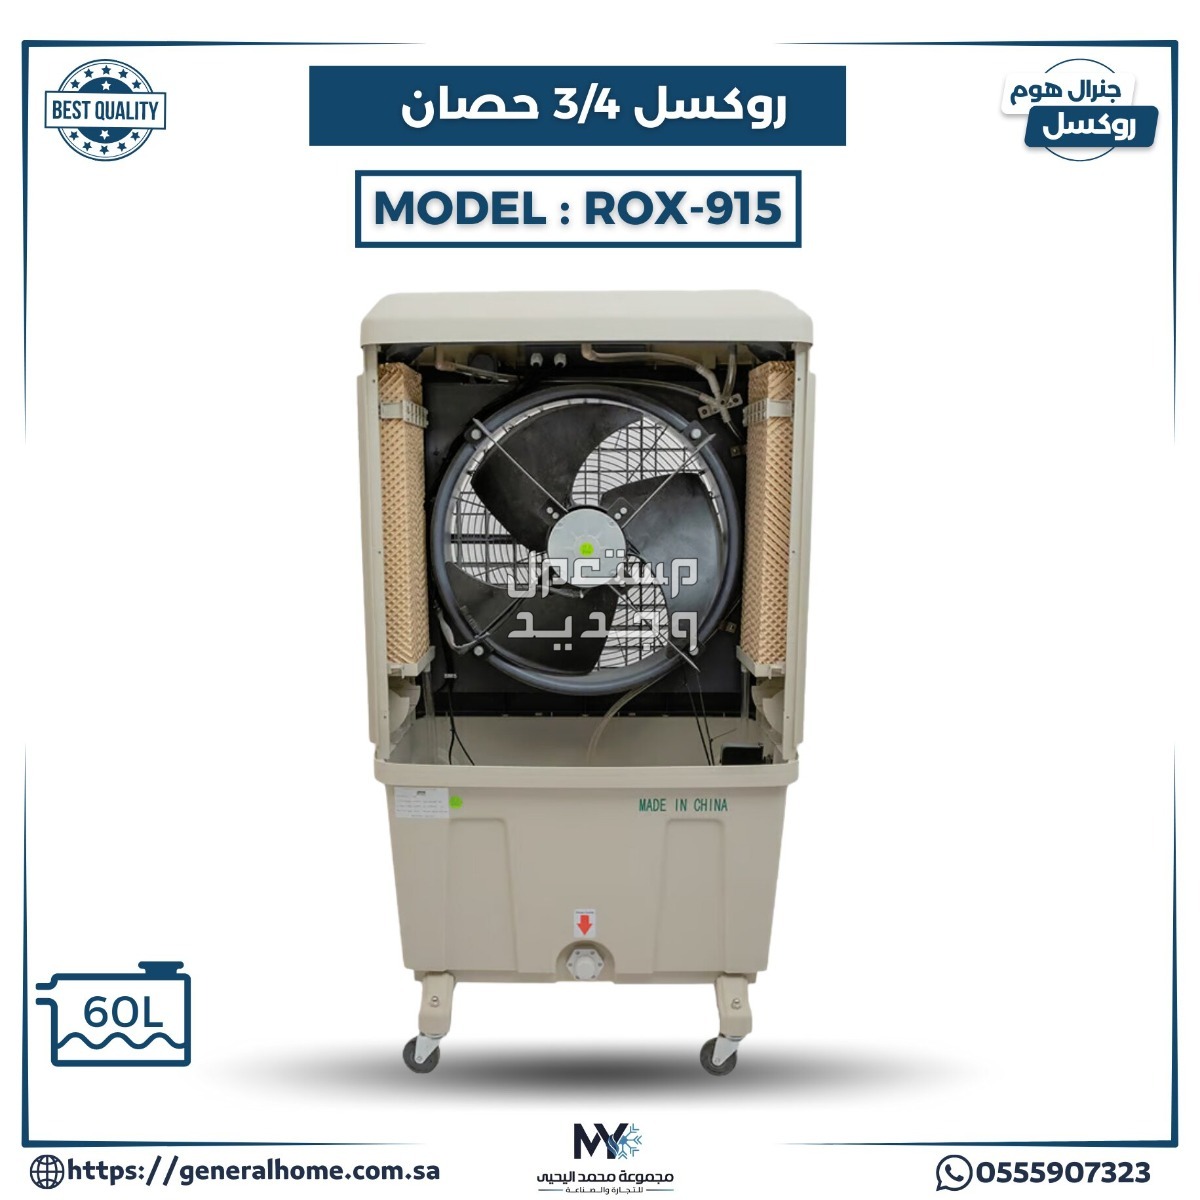 عروض اليحيى للمكيفات بالأنواع والمواصفات والصور والأسعار في مصر مكيف روكسل 3/4 حصان موديل ROX-915